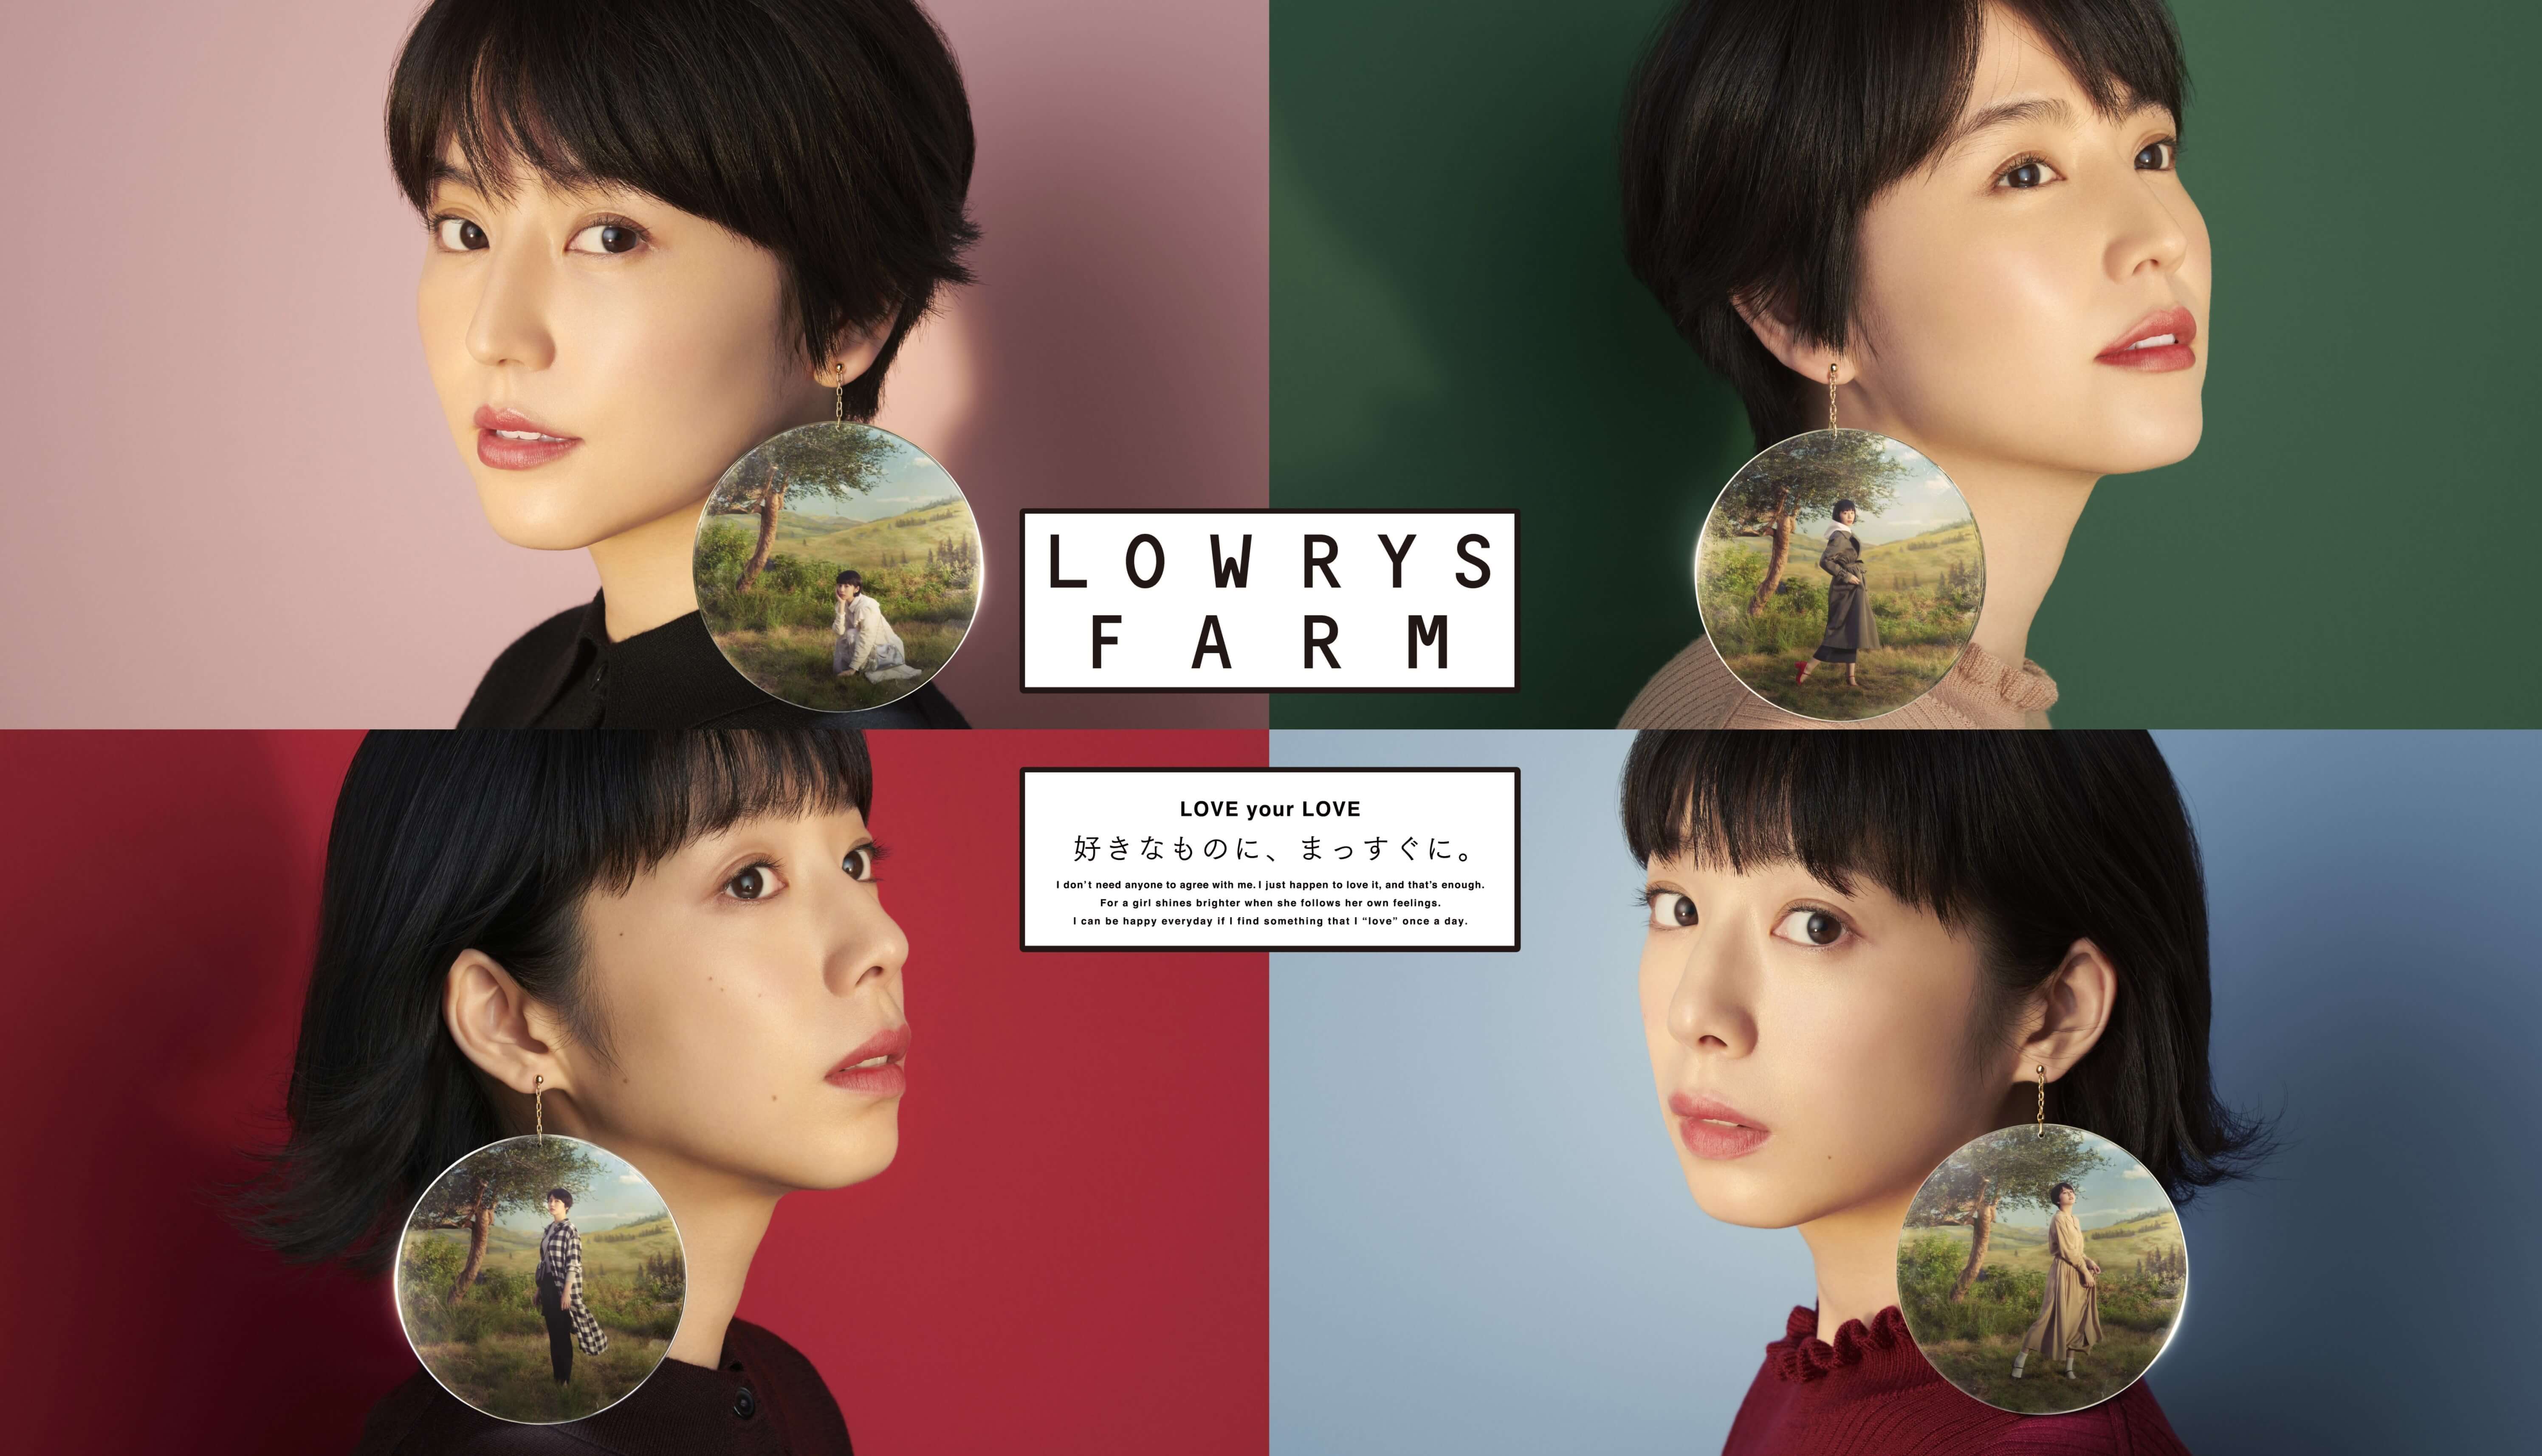 lowrys-farm-2018aw%e3%83%a1%e3%82%a4%e3%83%b3%e7%94%bb%e5%83%8f